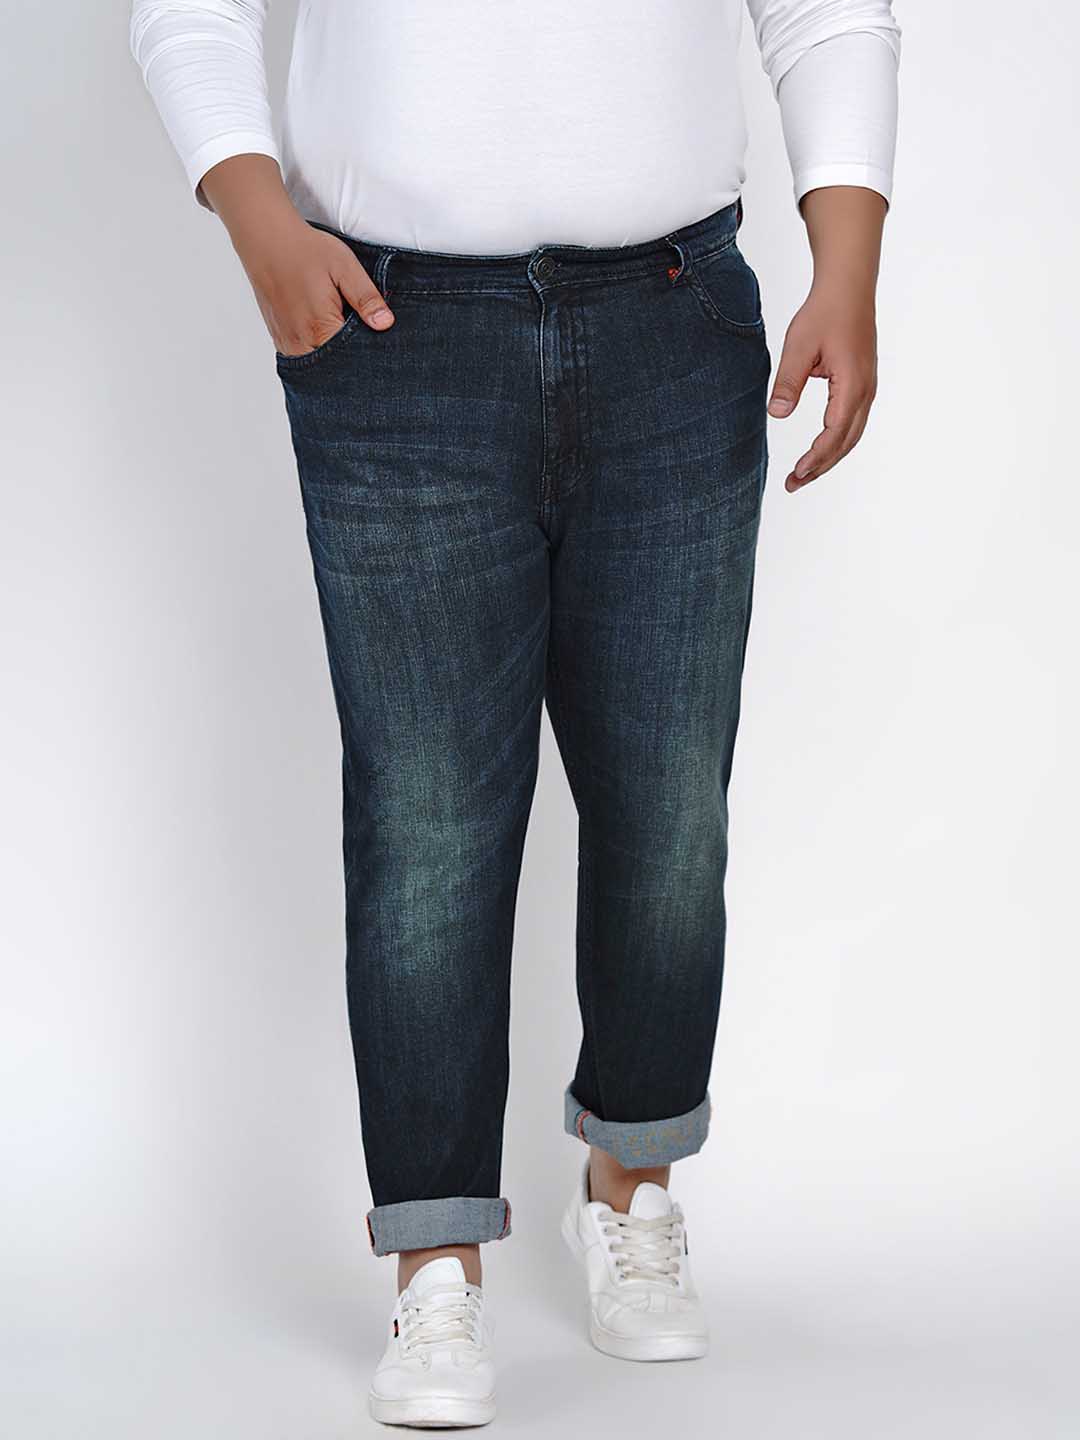 affordables/jeans/JPJ2520/jpj2520-2.jpg